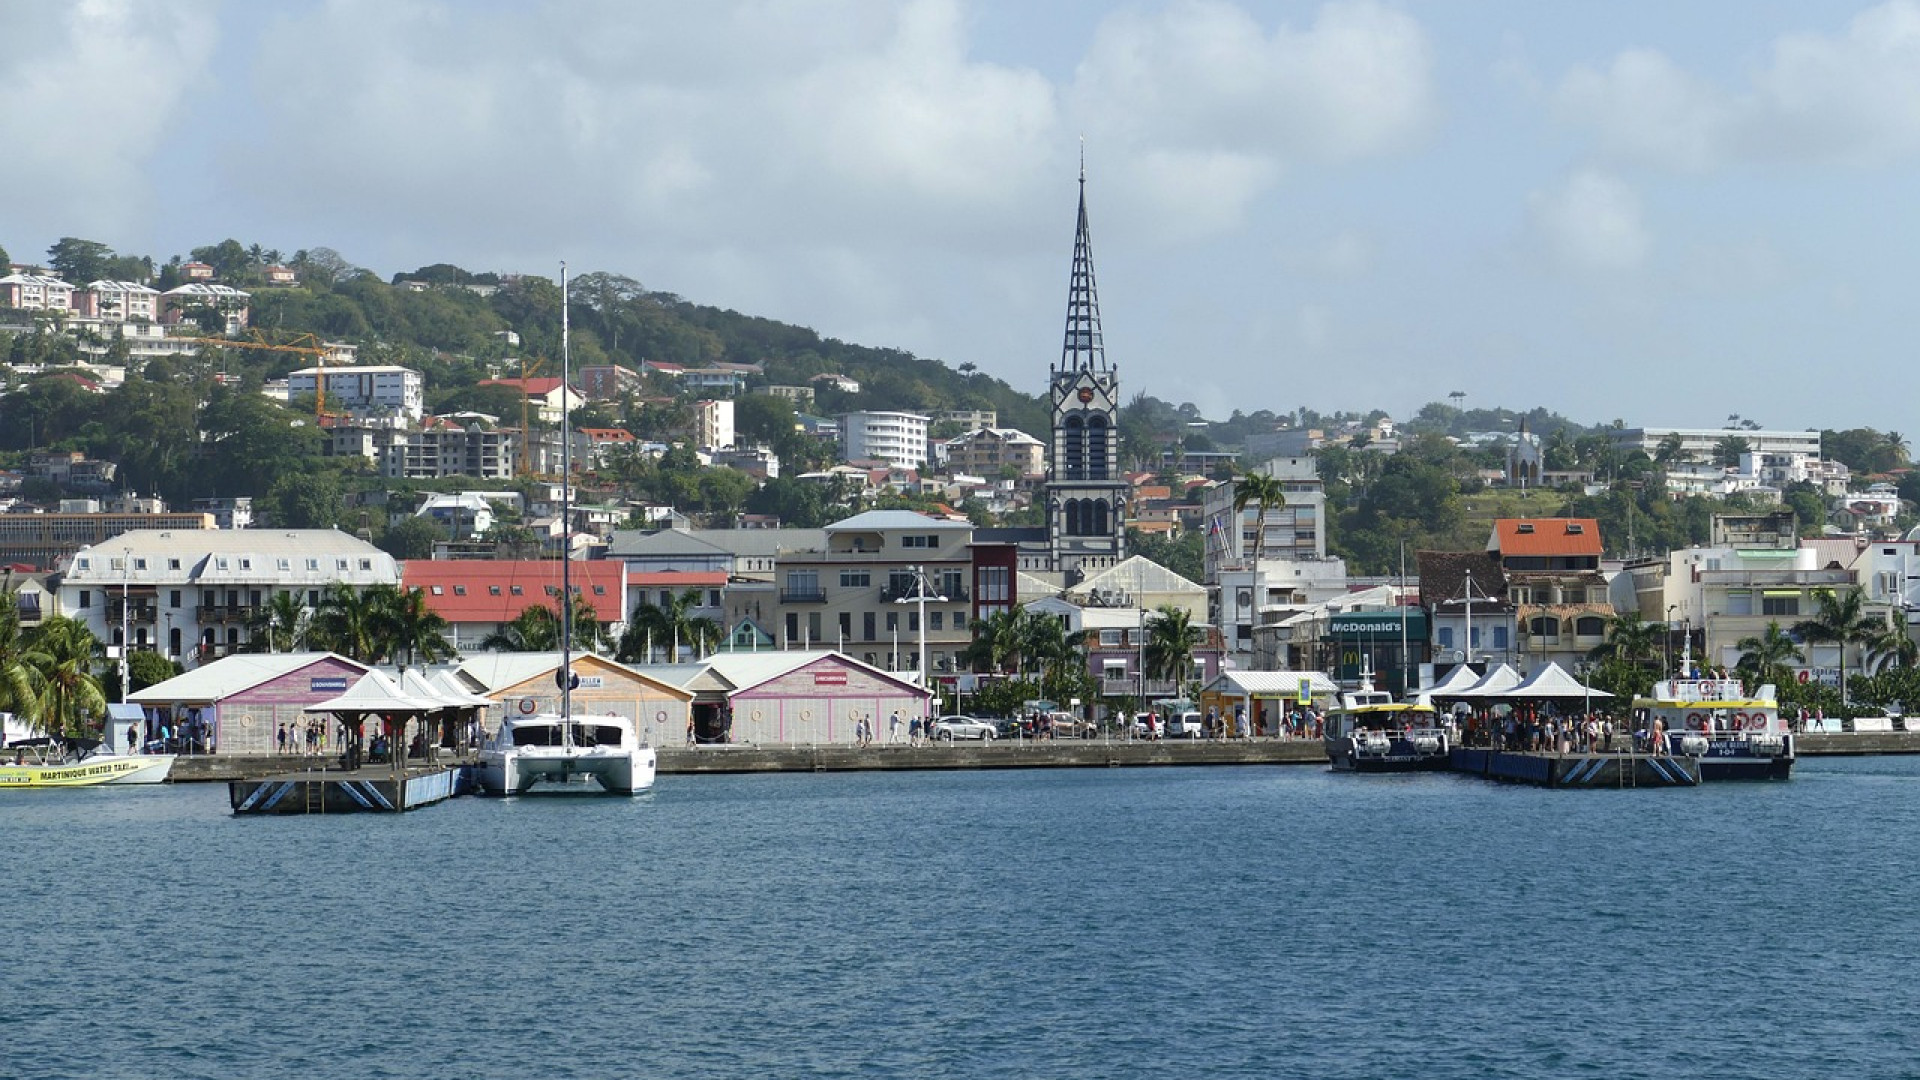 Louer une voiture pour visiter la Martinique : le guide ultime